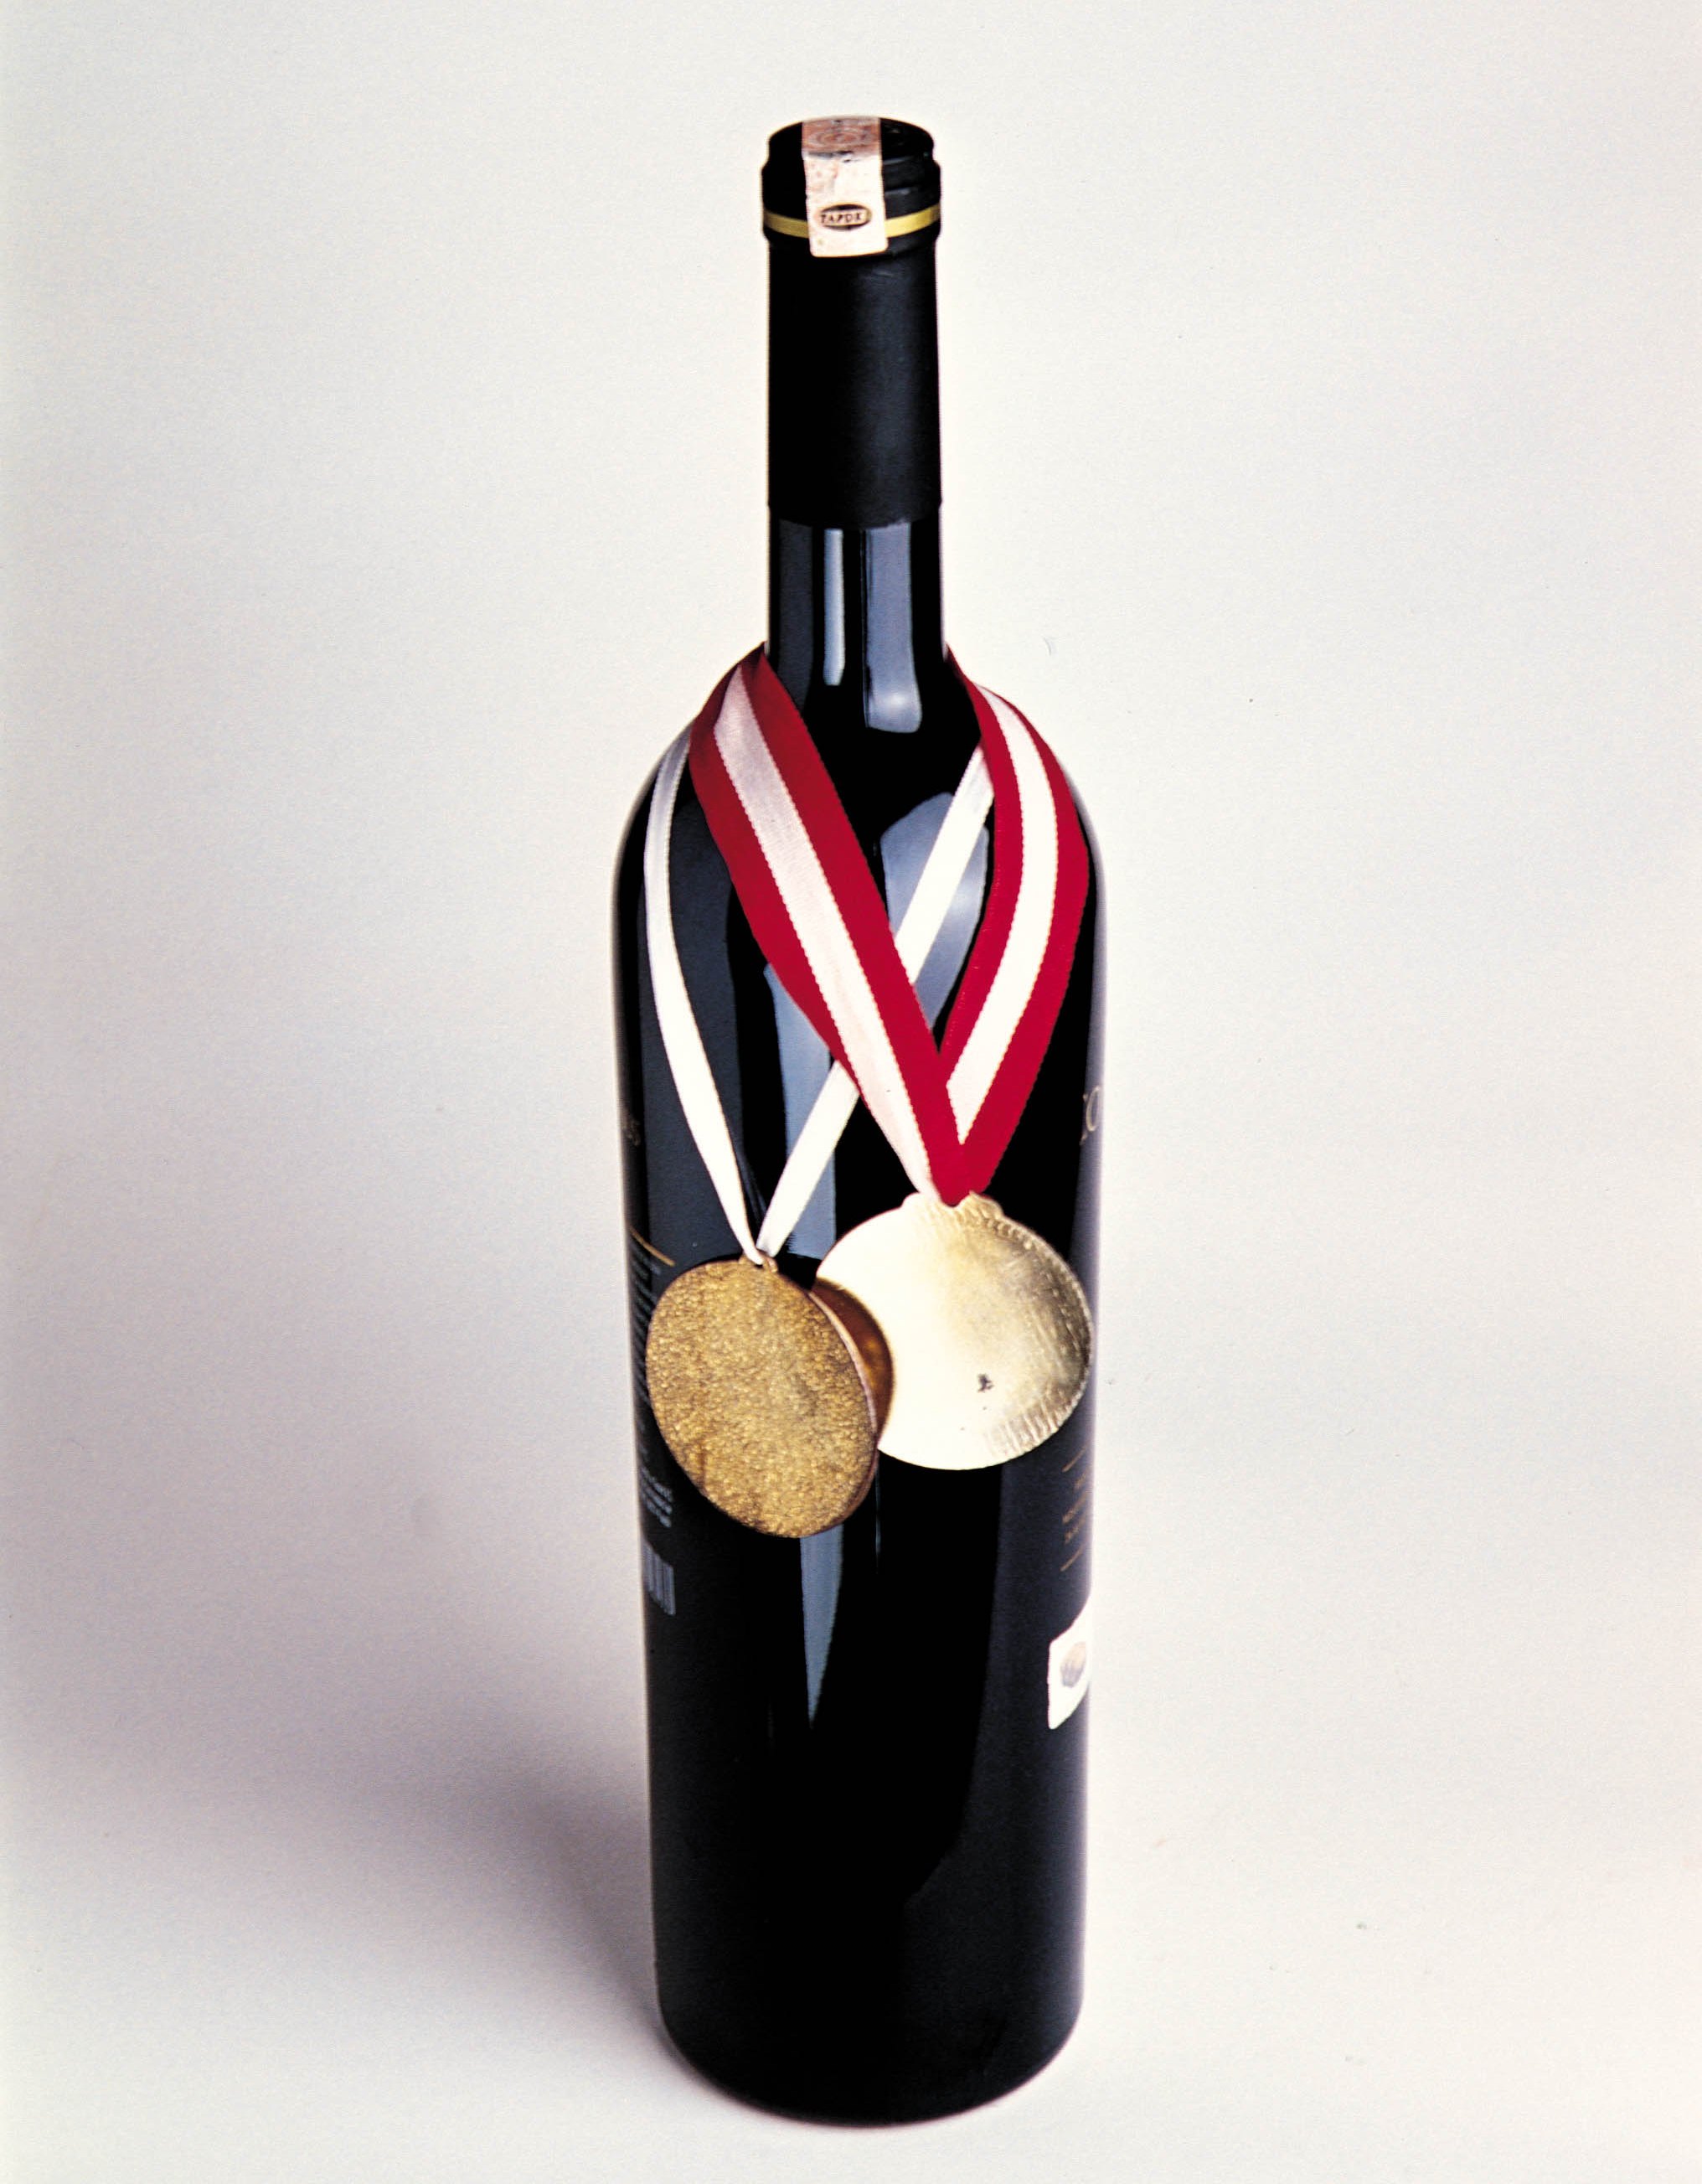 Madalya üzerine madalya alan Türk şarapları bırakın destek almayı, köstek olunmasa bile dünyayı fethedebilir...